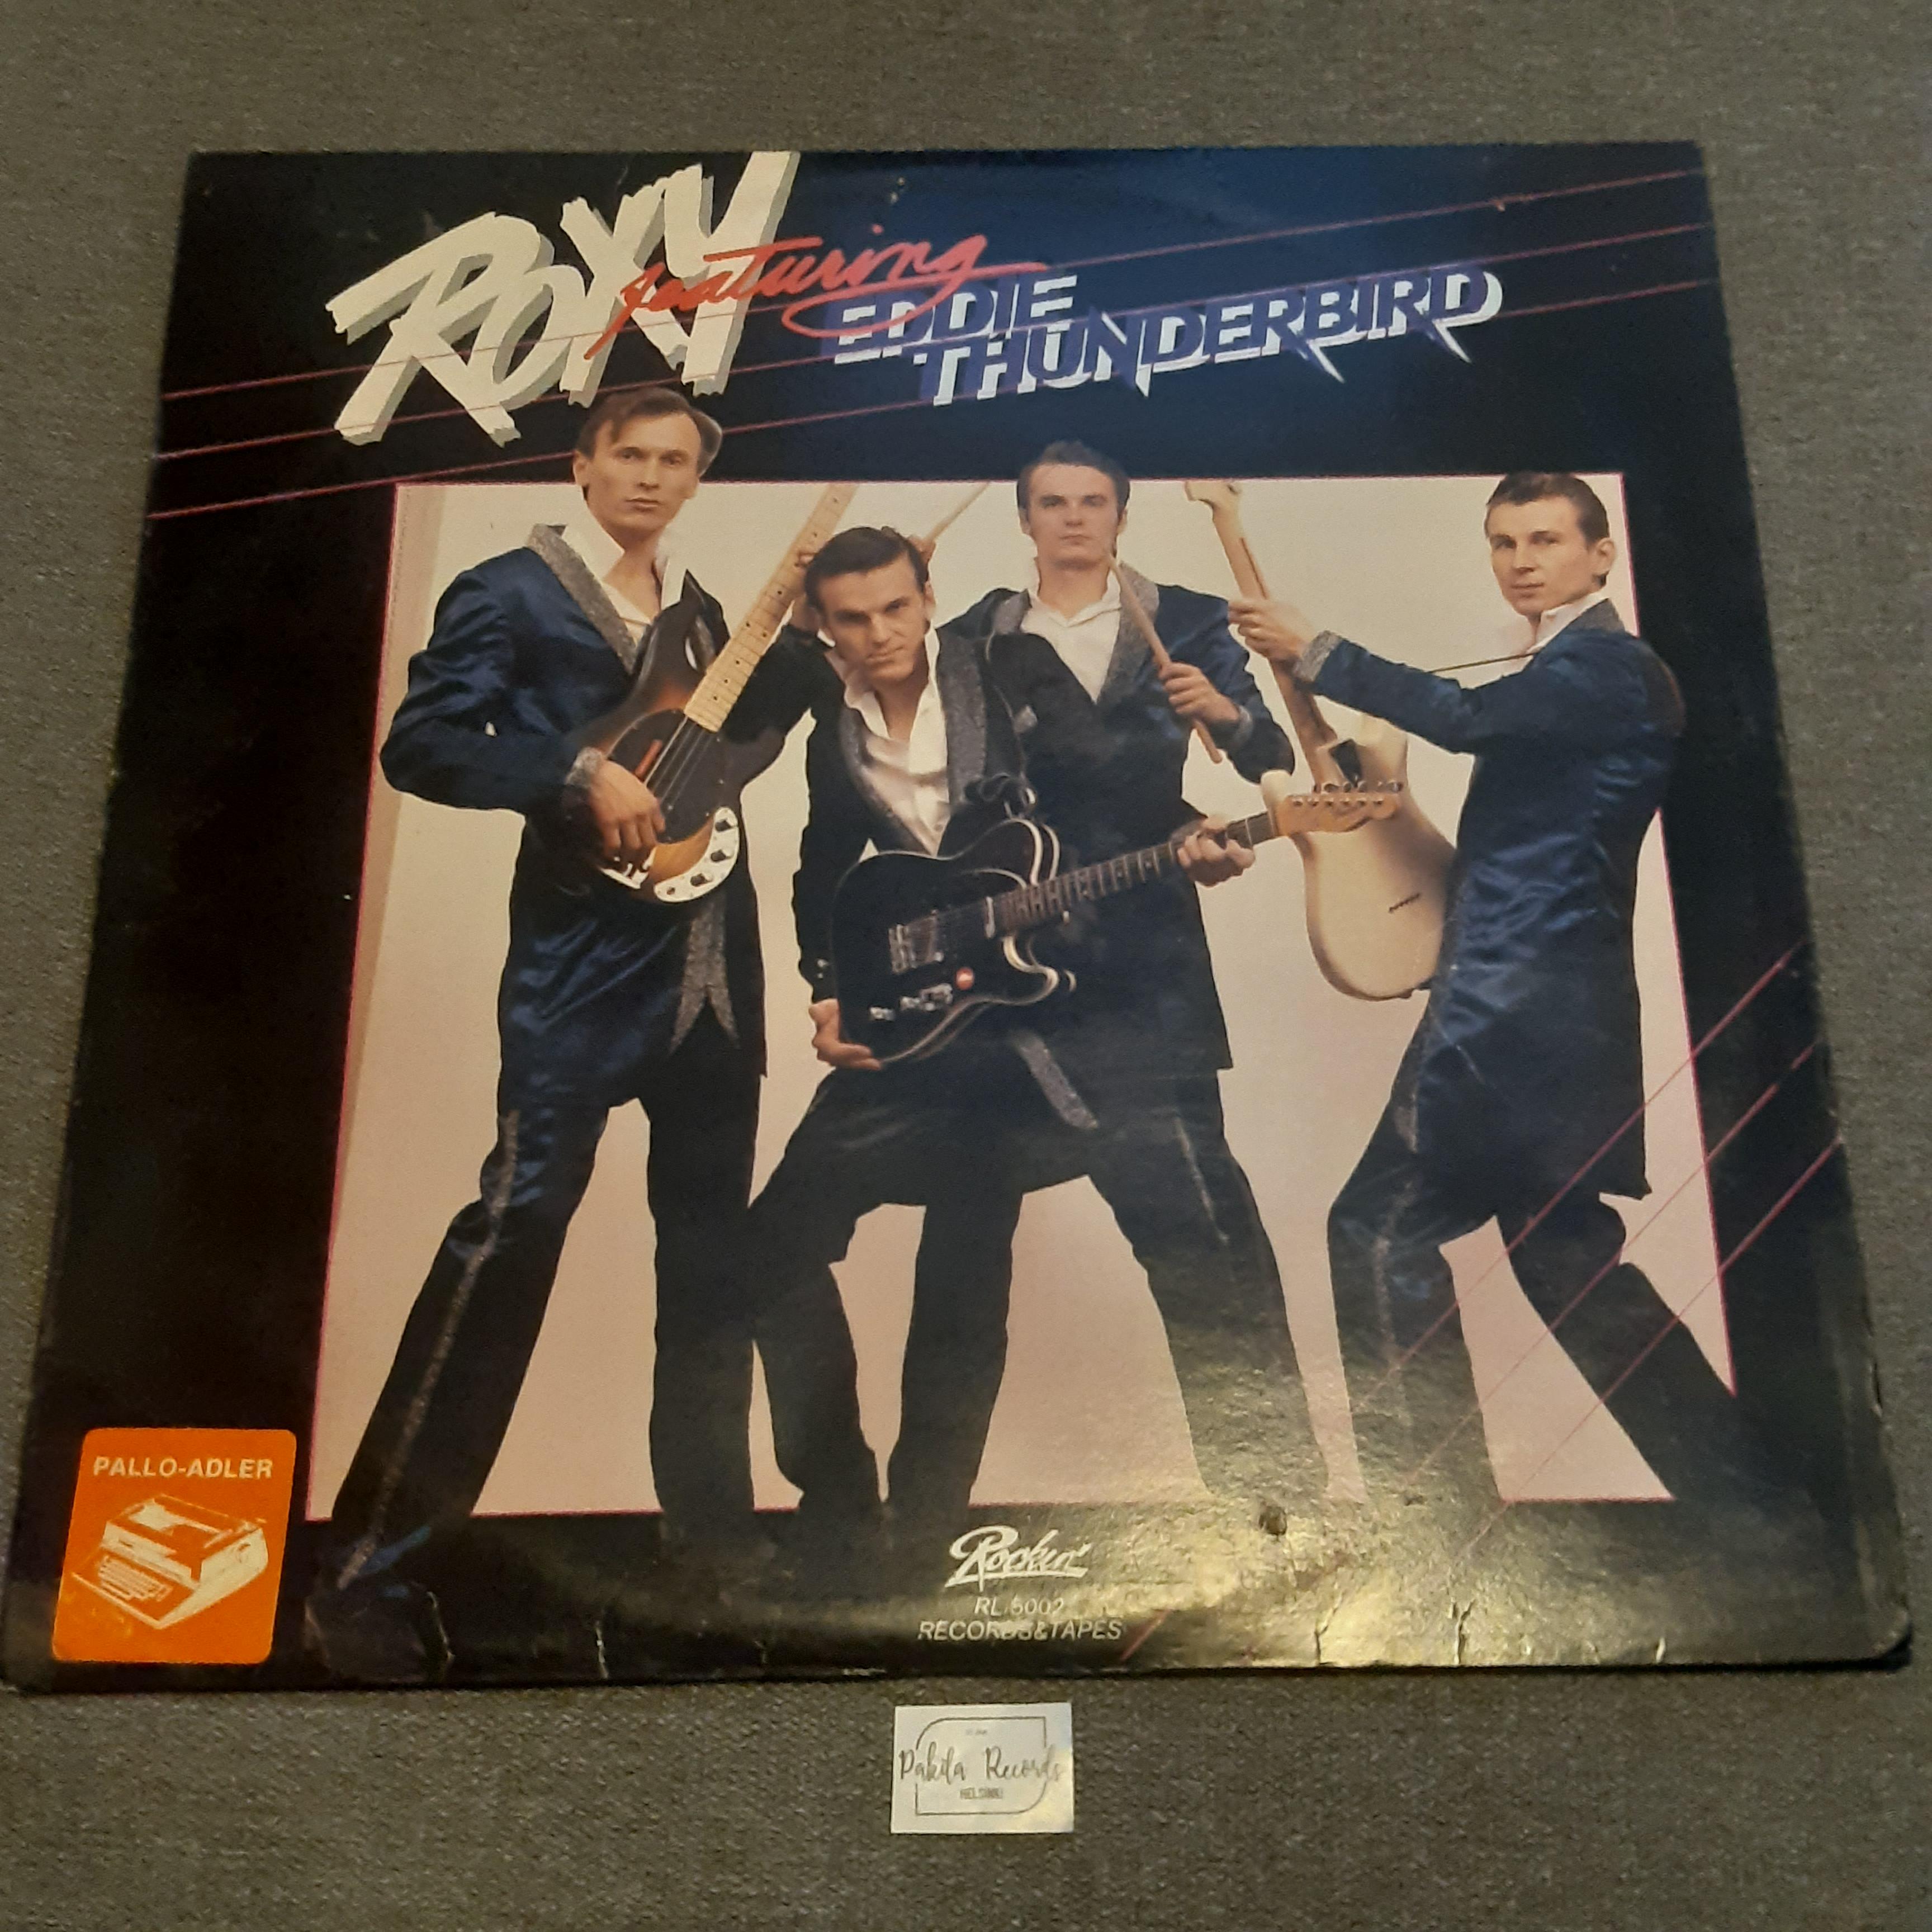 Roxy Featuring Eddie Thunderbird - s/t - LP (käytetty)